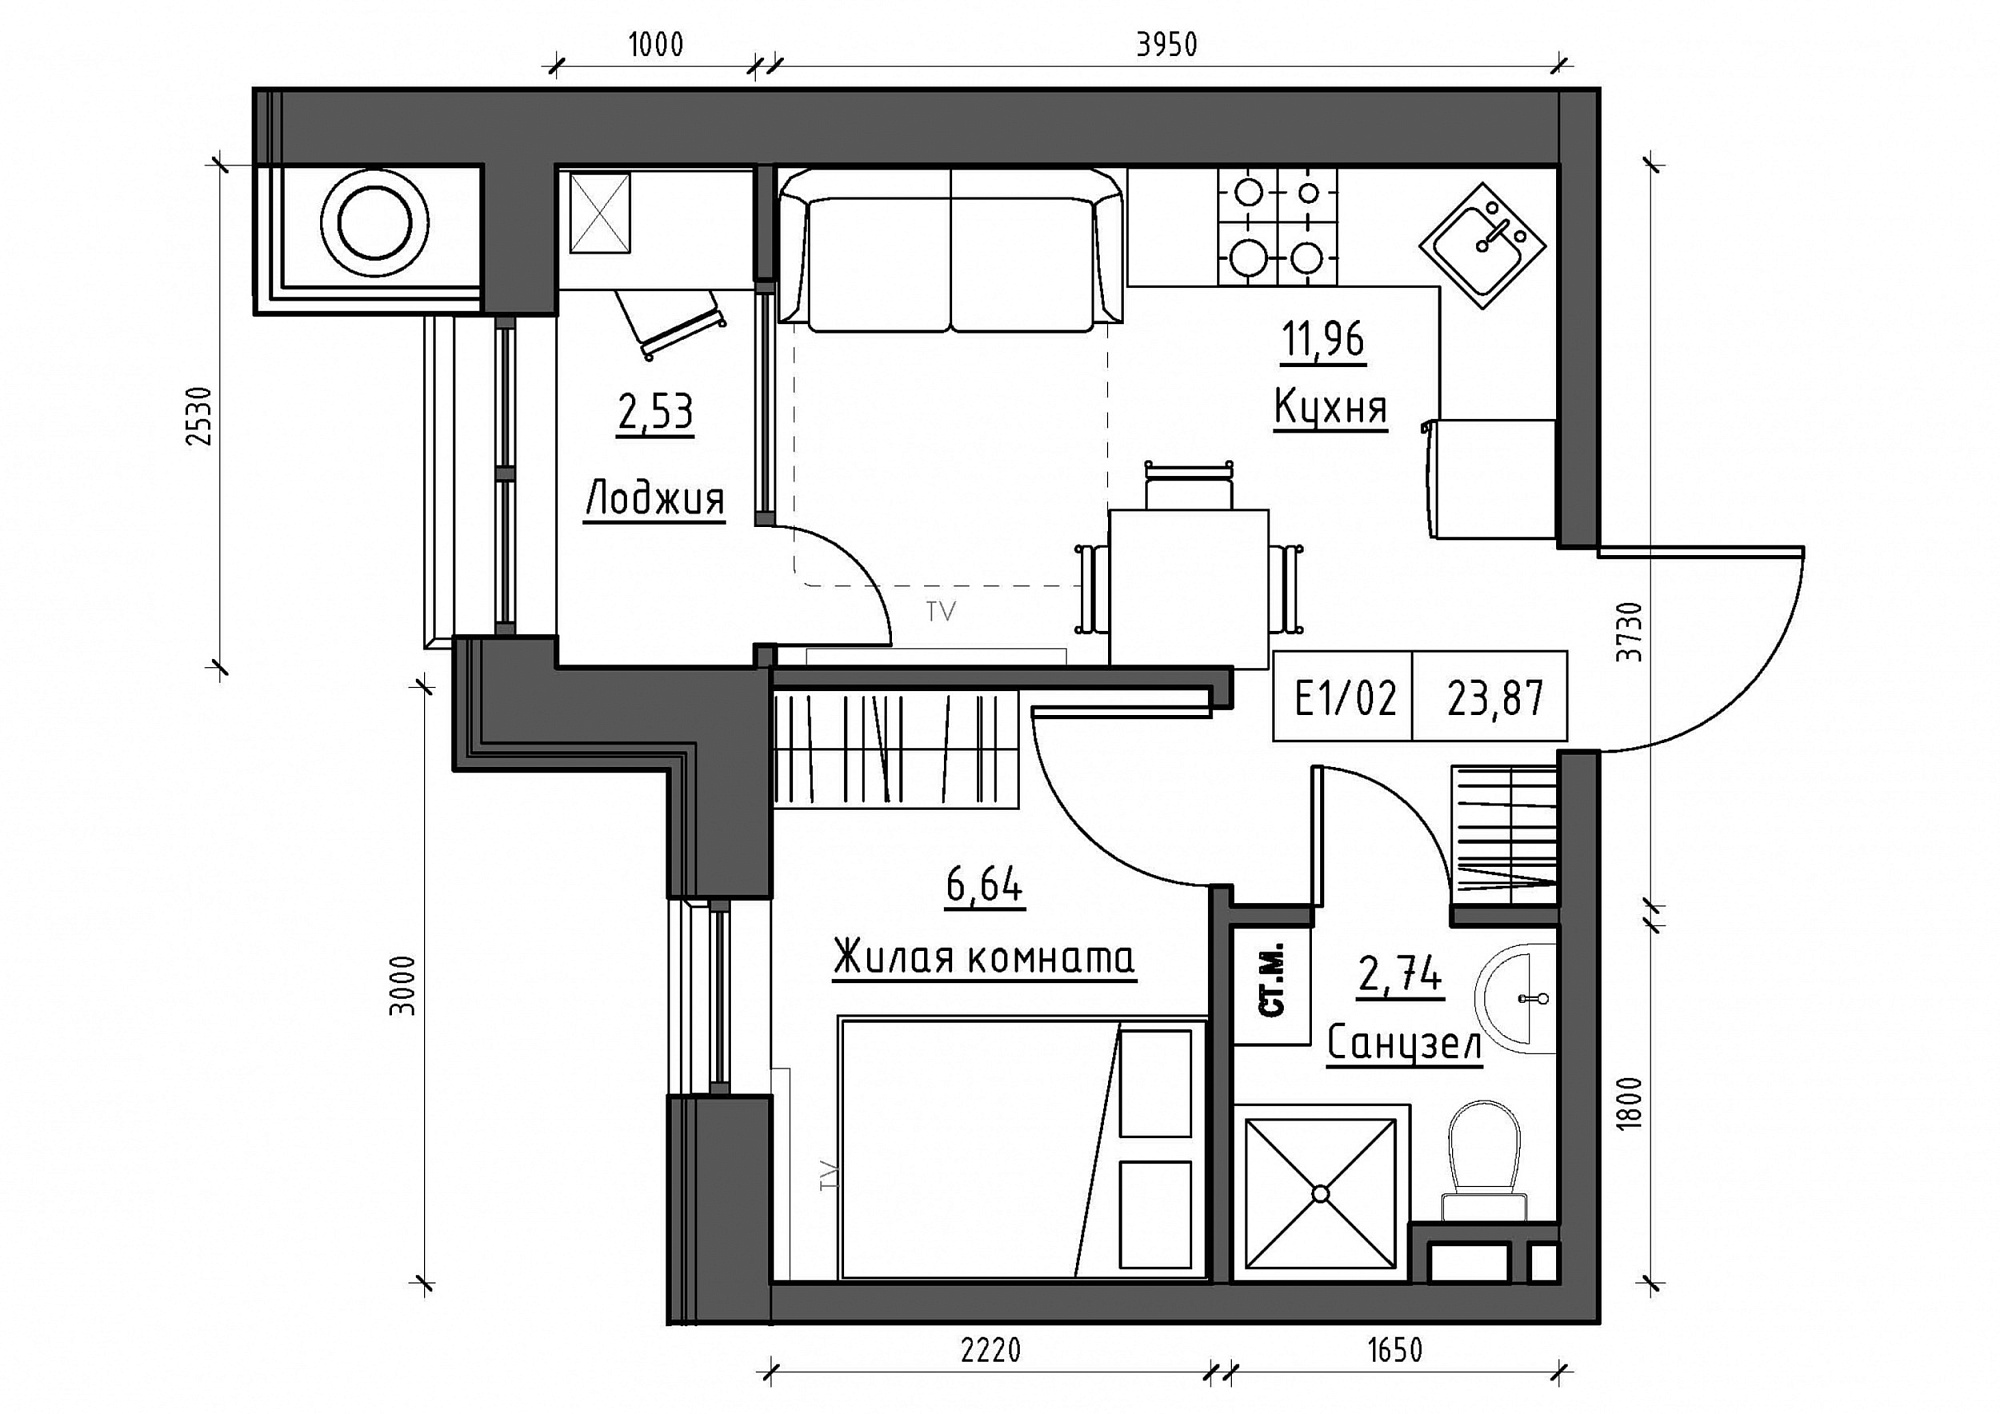 Планування 1-к квартира площею 23.87м2, KS-011-03/0001.